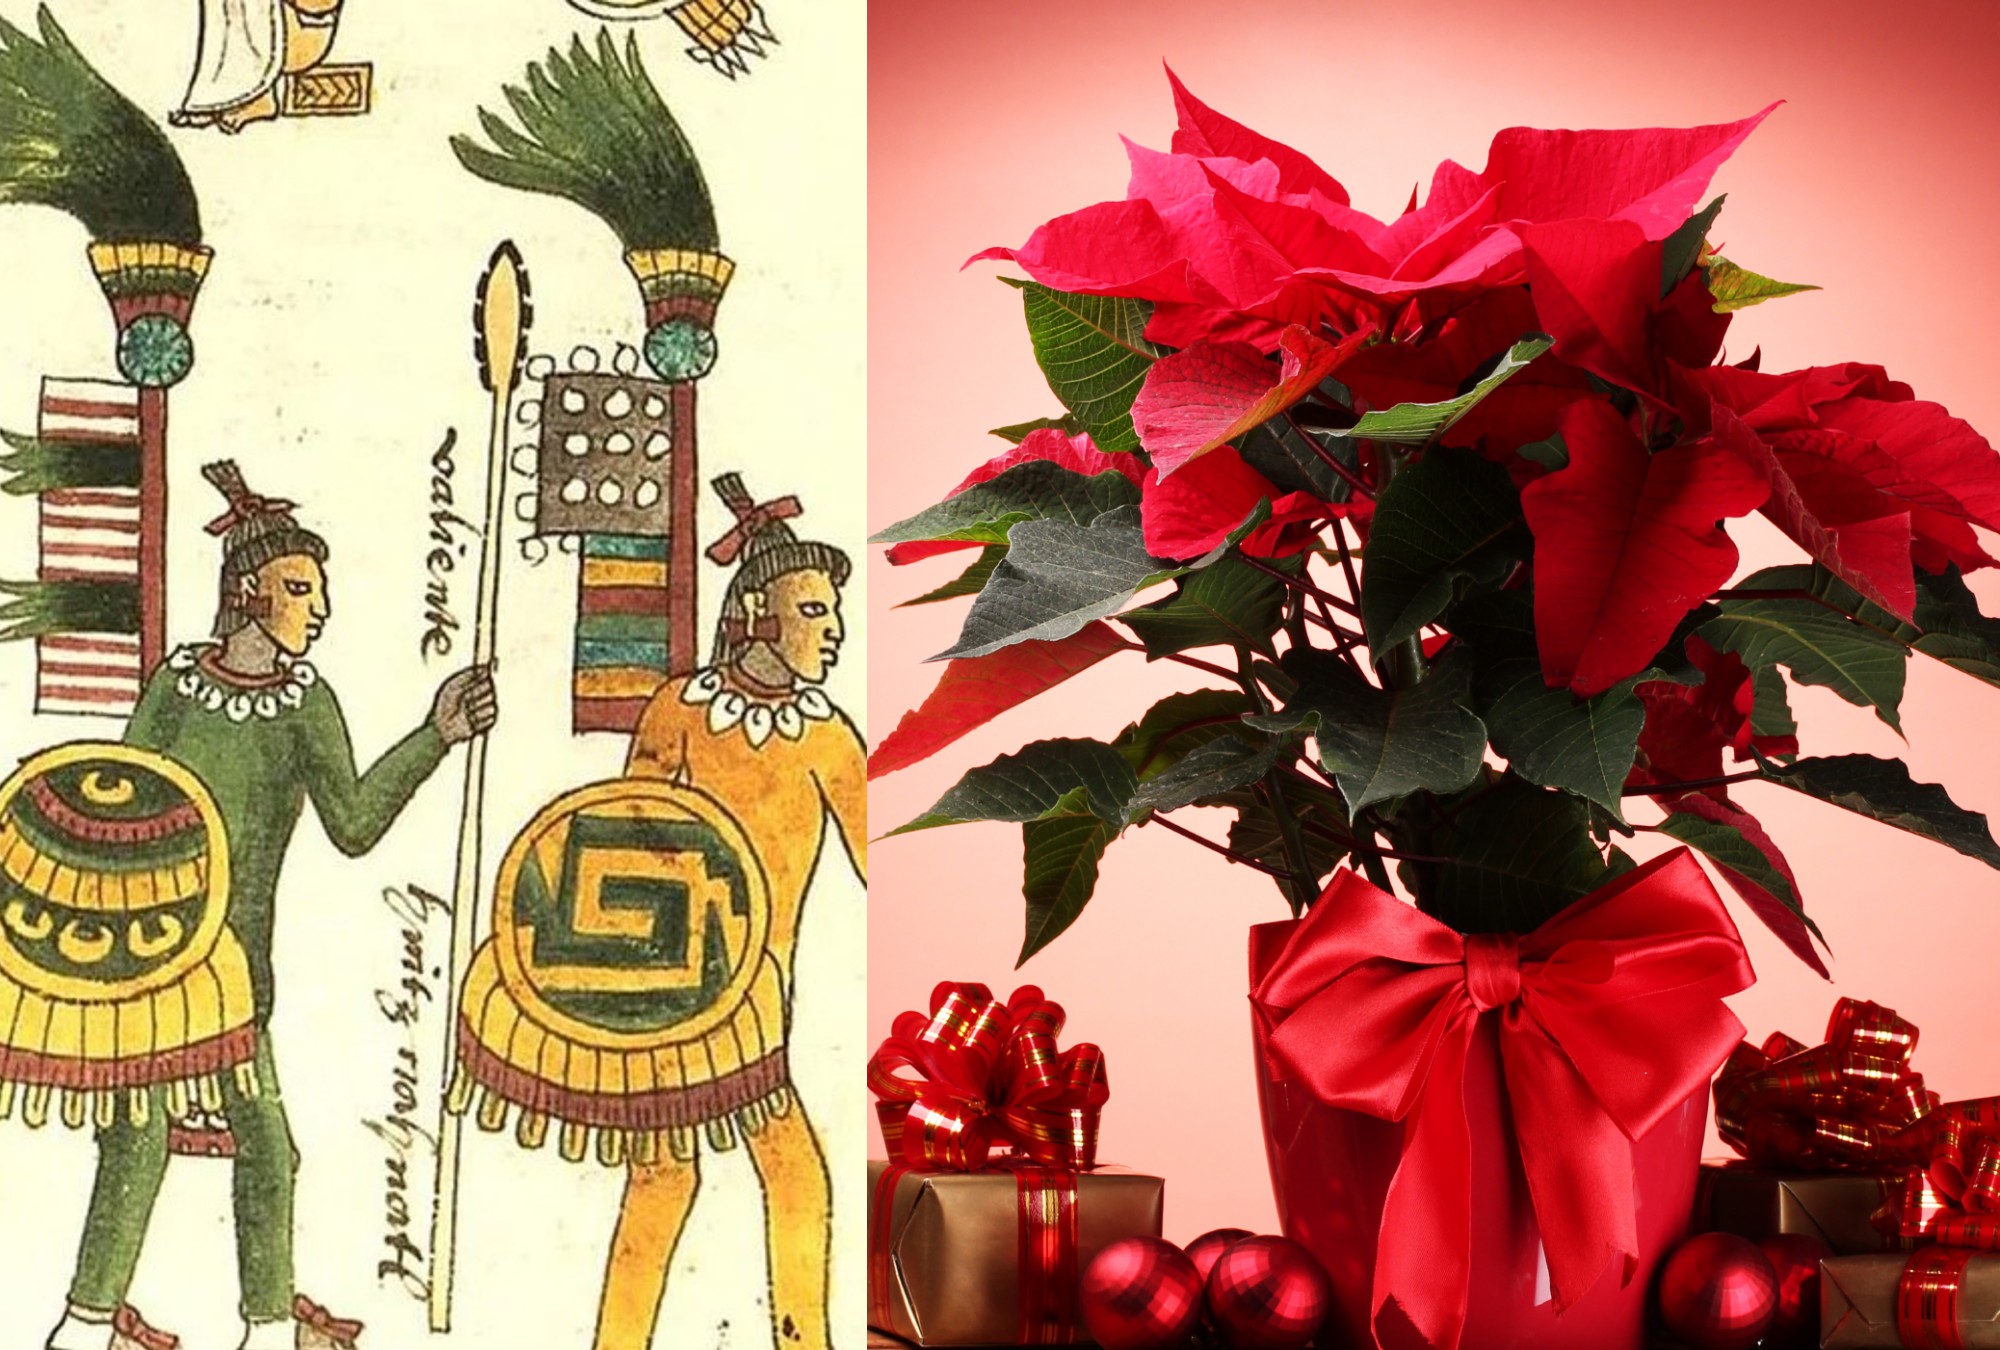 La nochebuena, la flor de los guerreros aztecas que Estados Unidos patentó  - Emprendedor